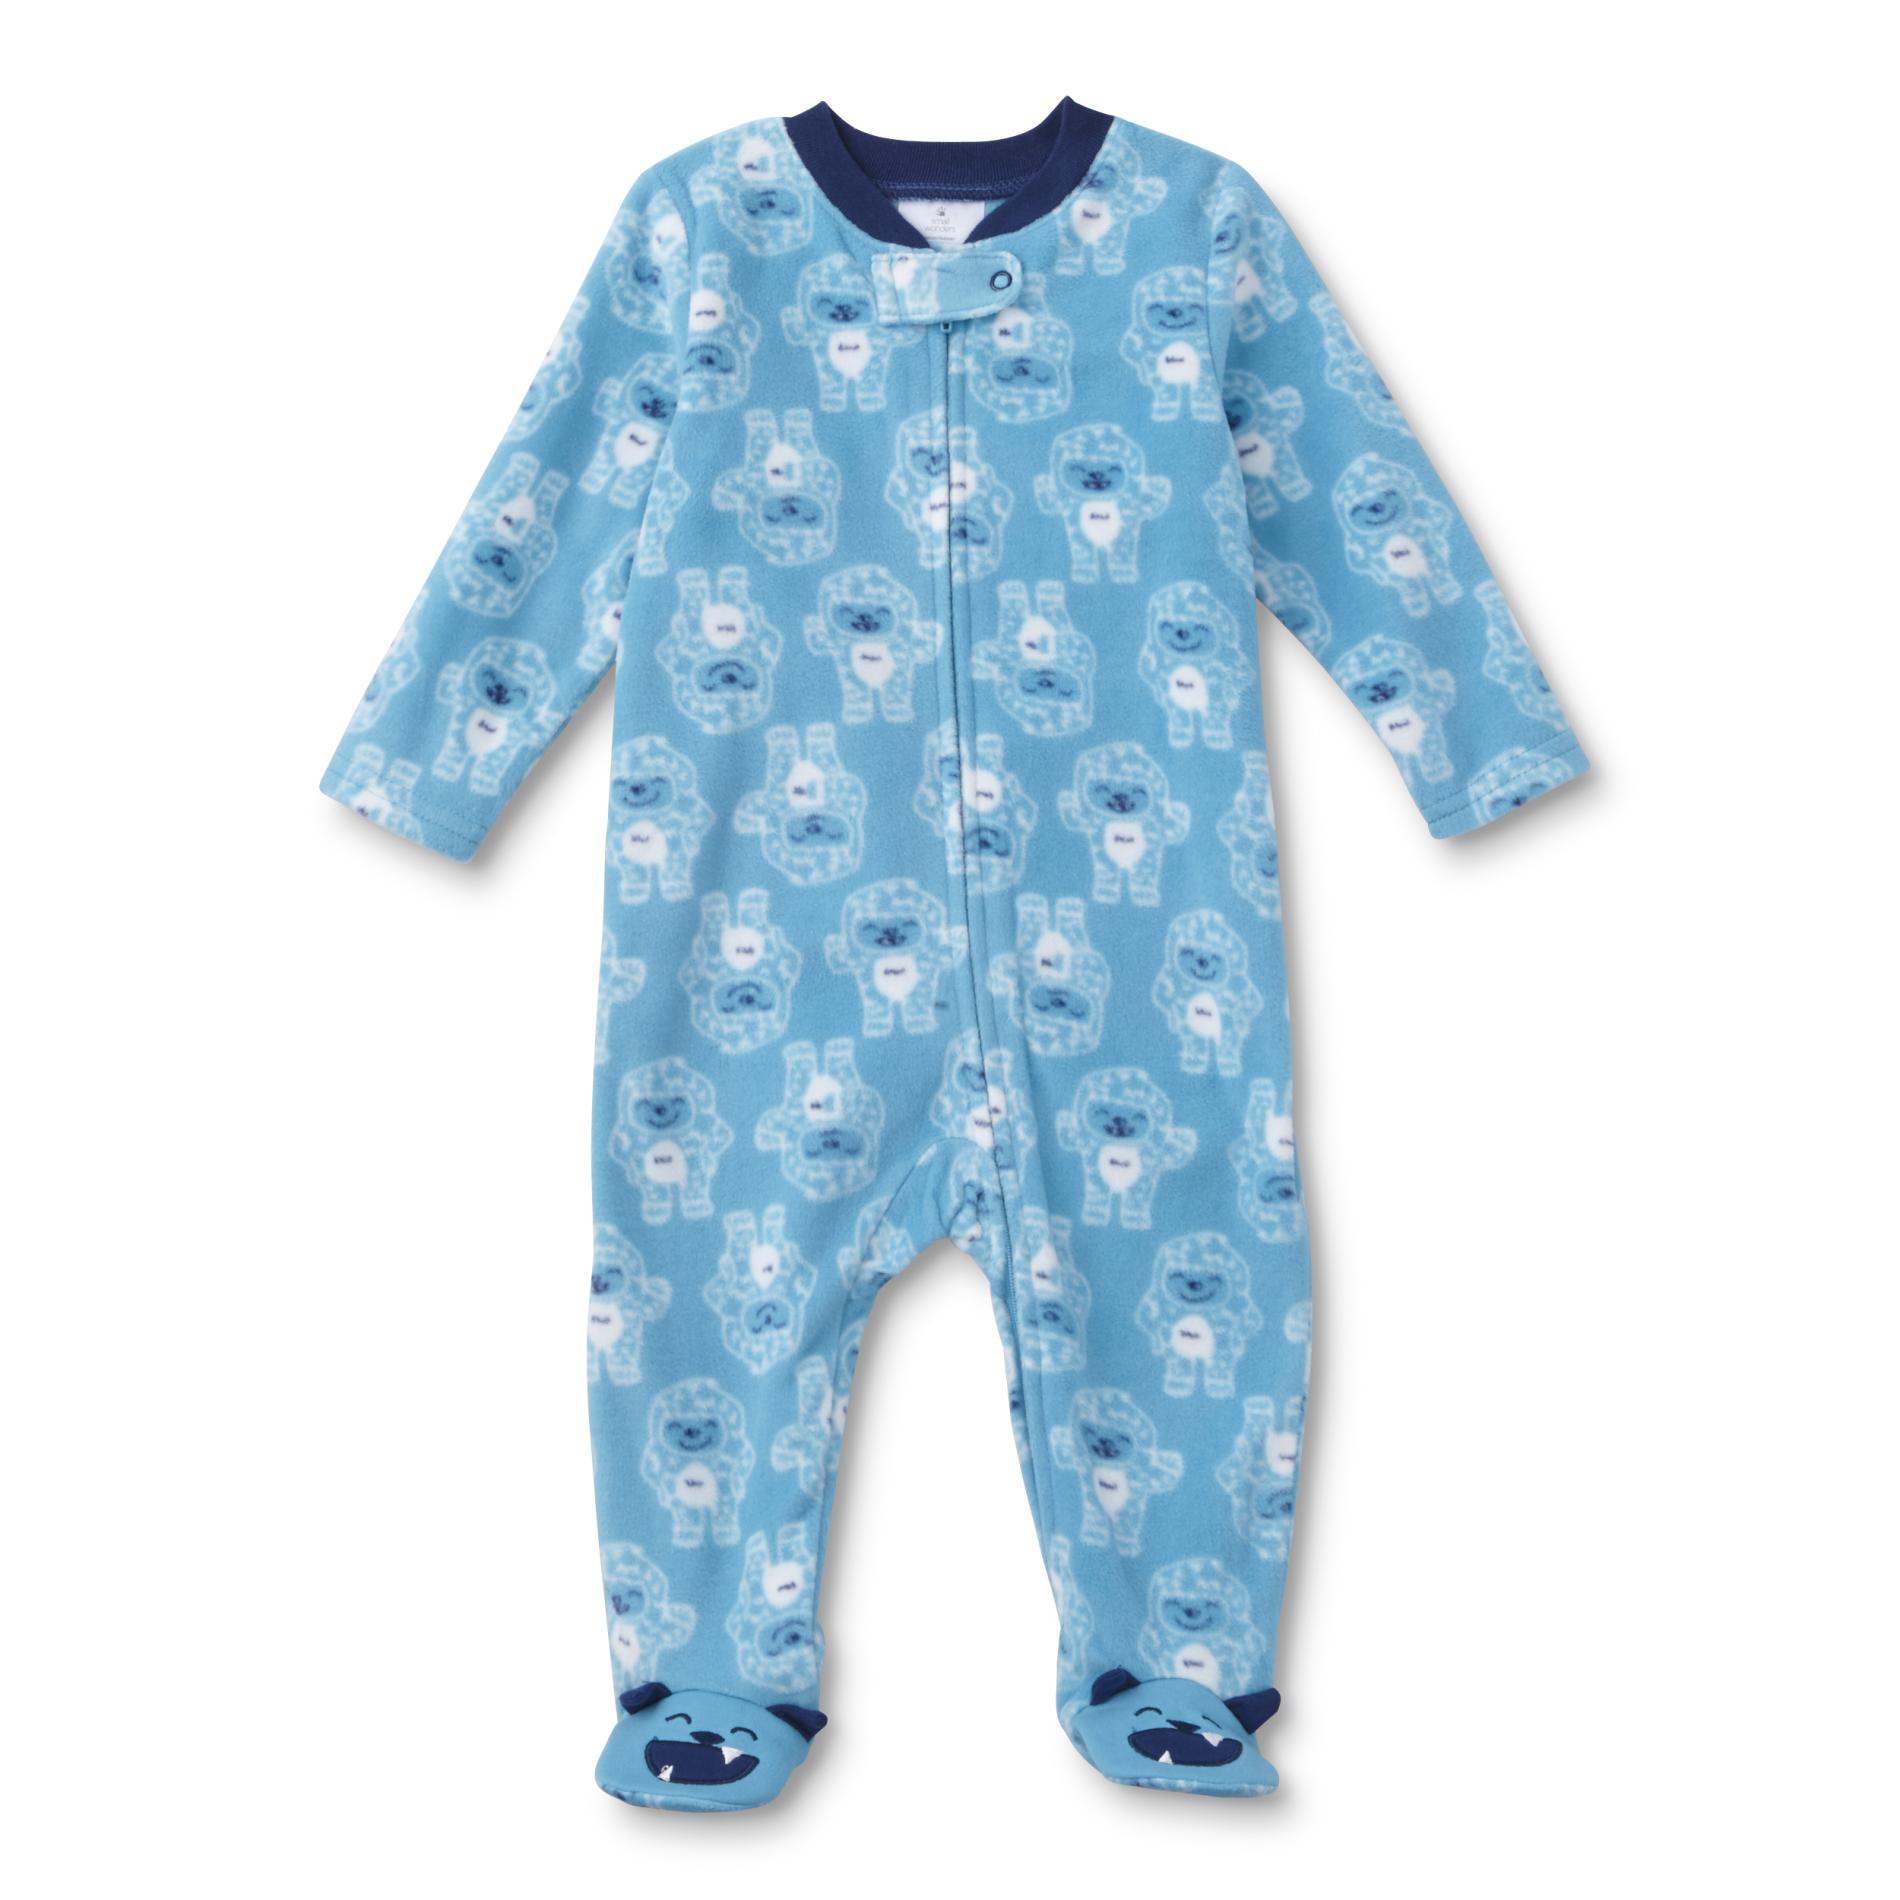 Small Wonders Newborn Boys' Fleece Sleeper Pajamas - Yeti